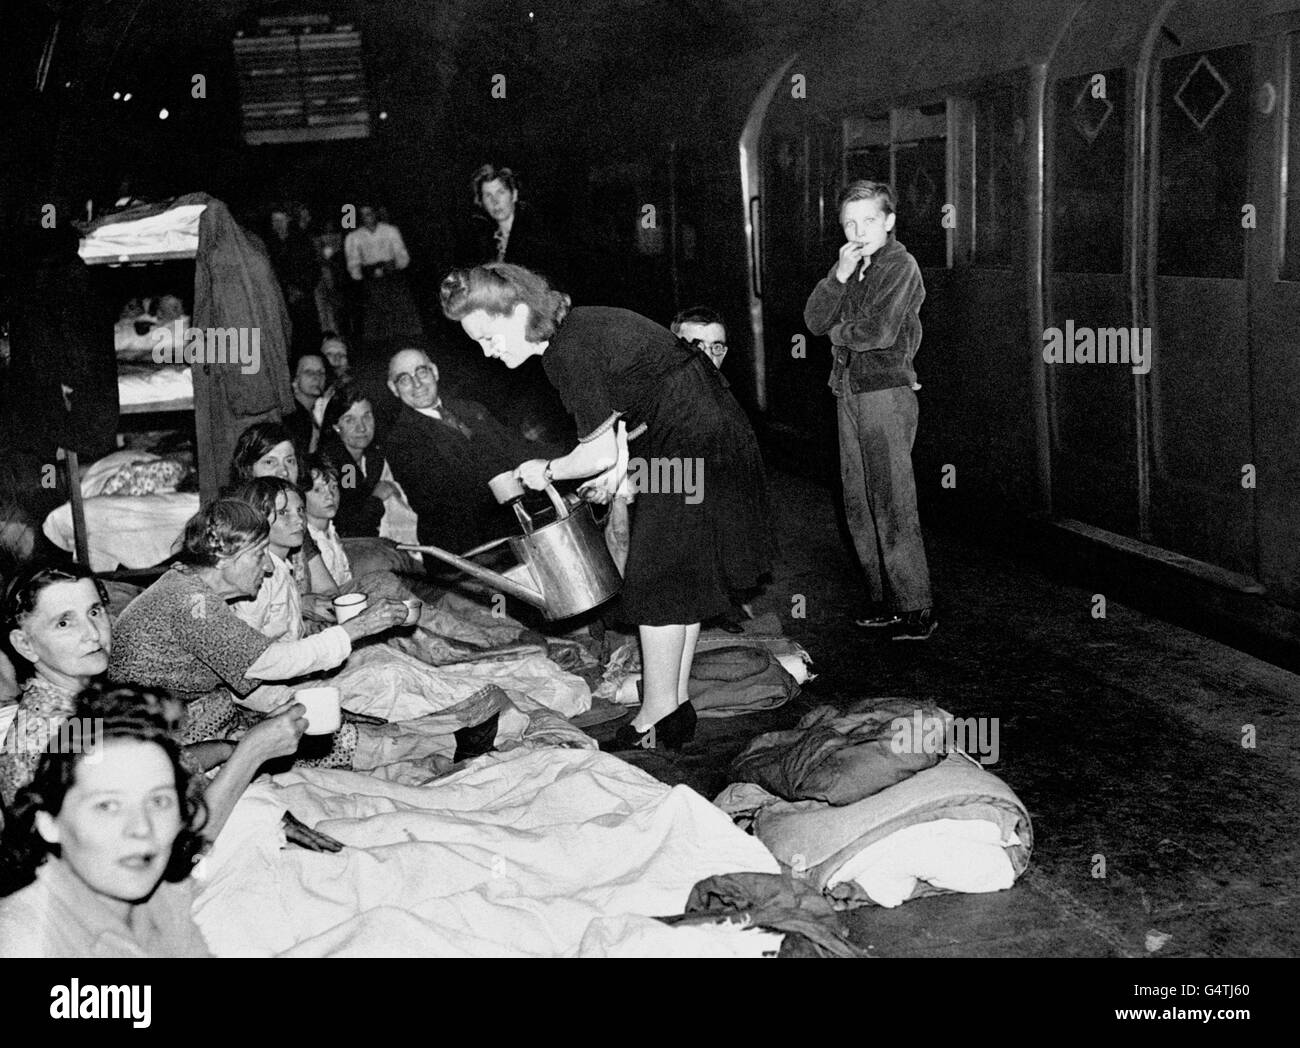 Una donna eroga acqua da una lattina di irrigazione, mentre i londinesi si rifugiano nella metropolitana di Londra durante il Blitz. Foto Stock